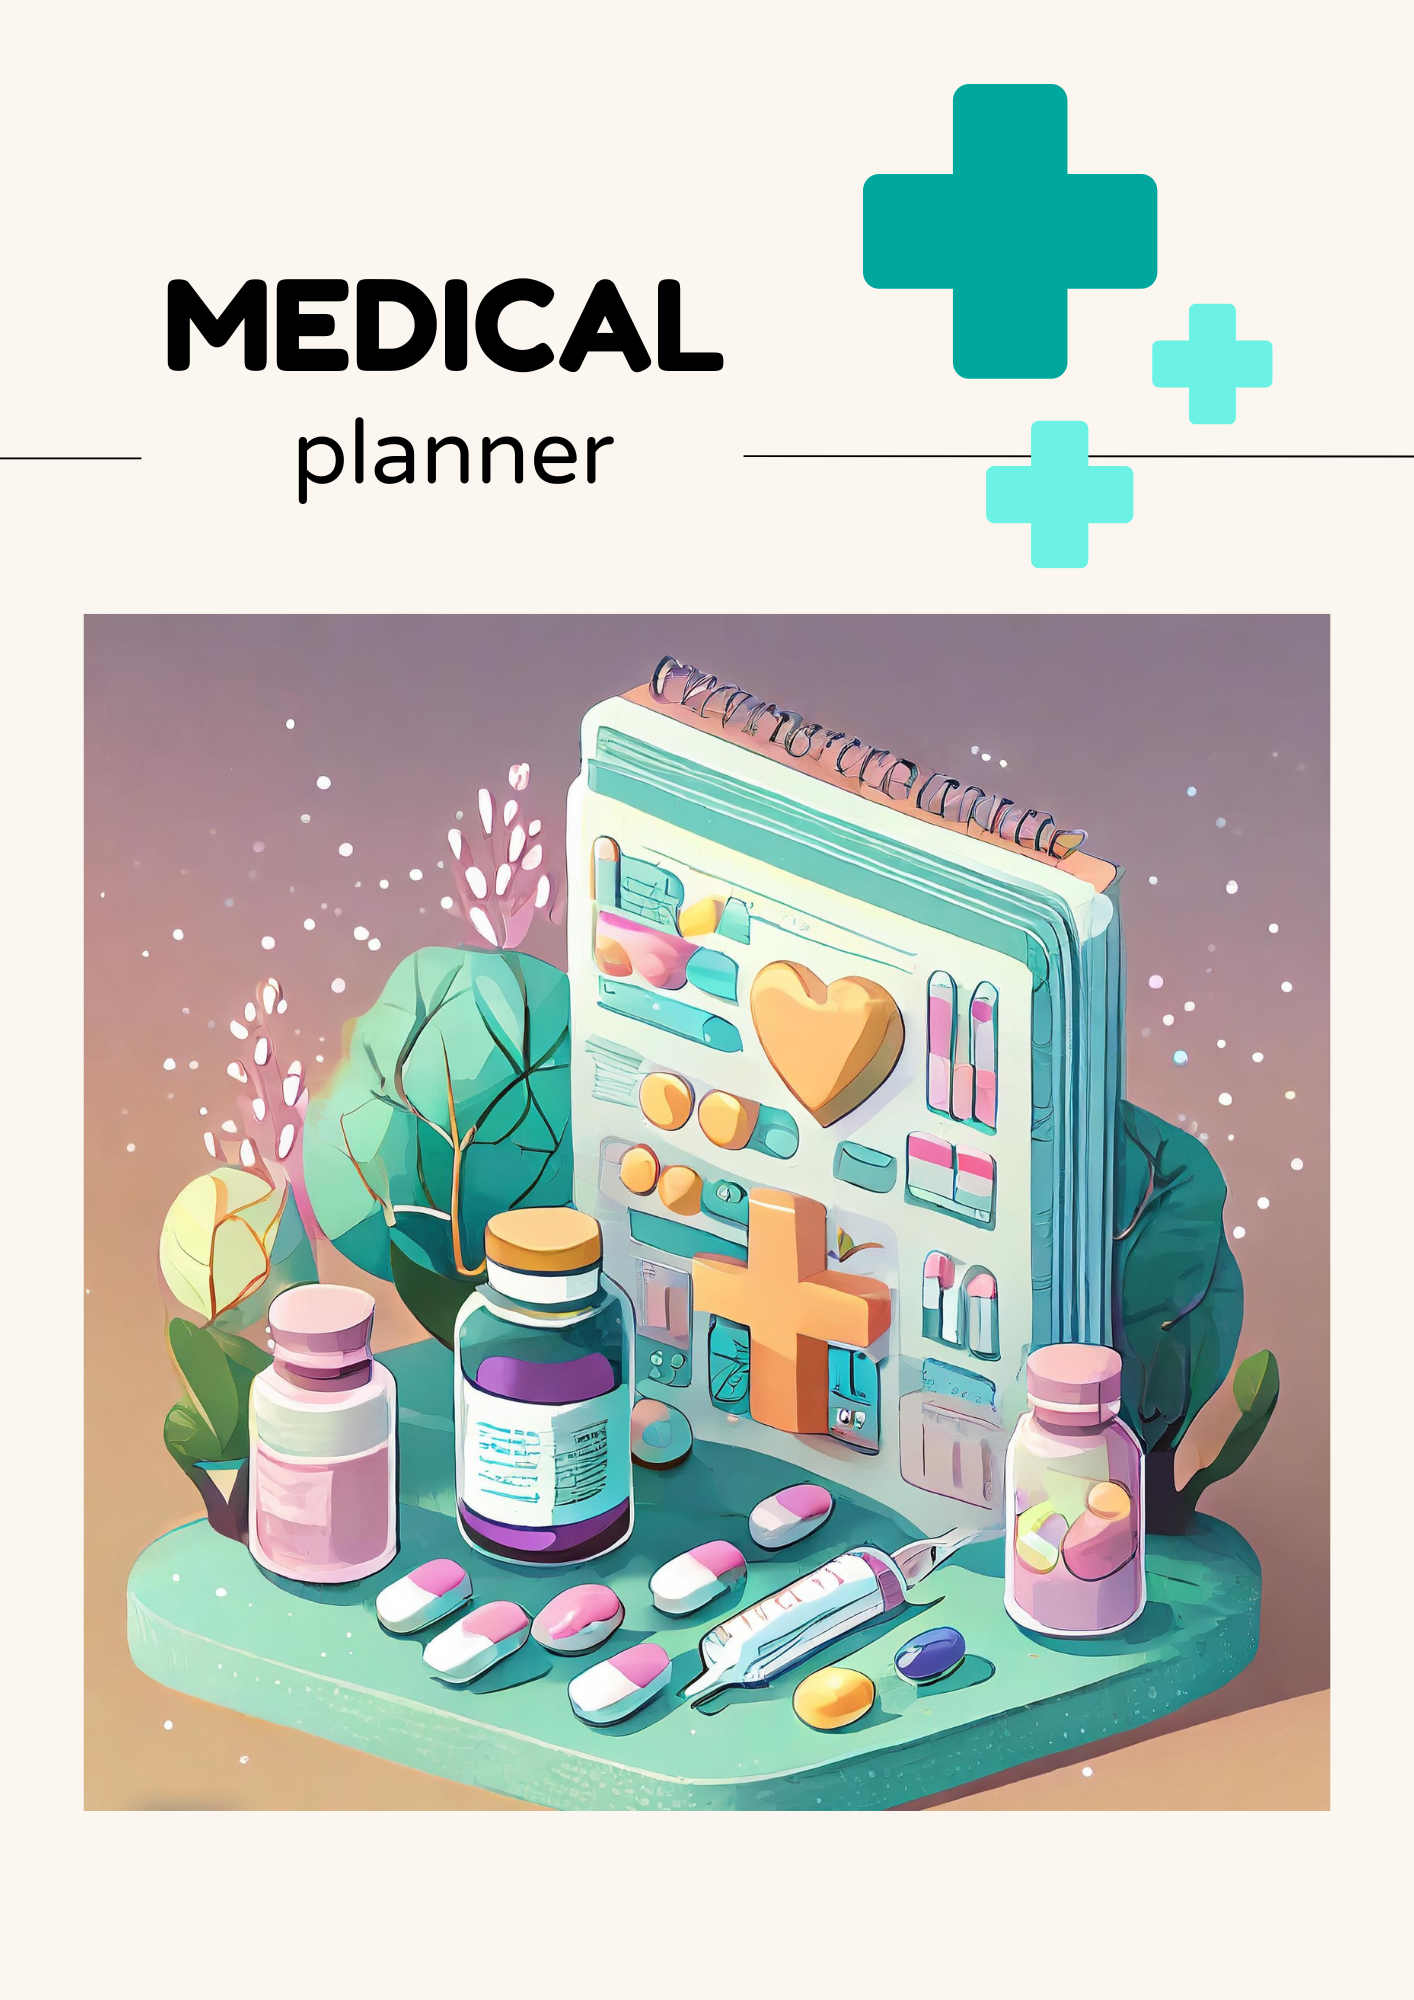 Medical Planner